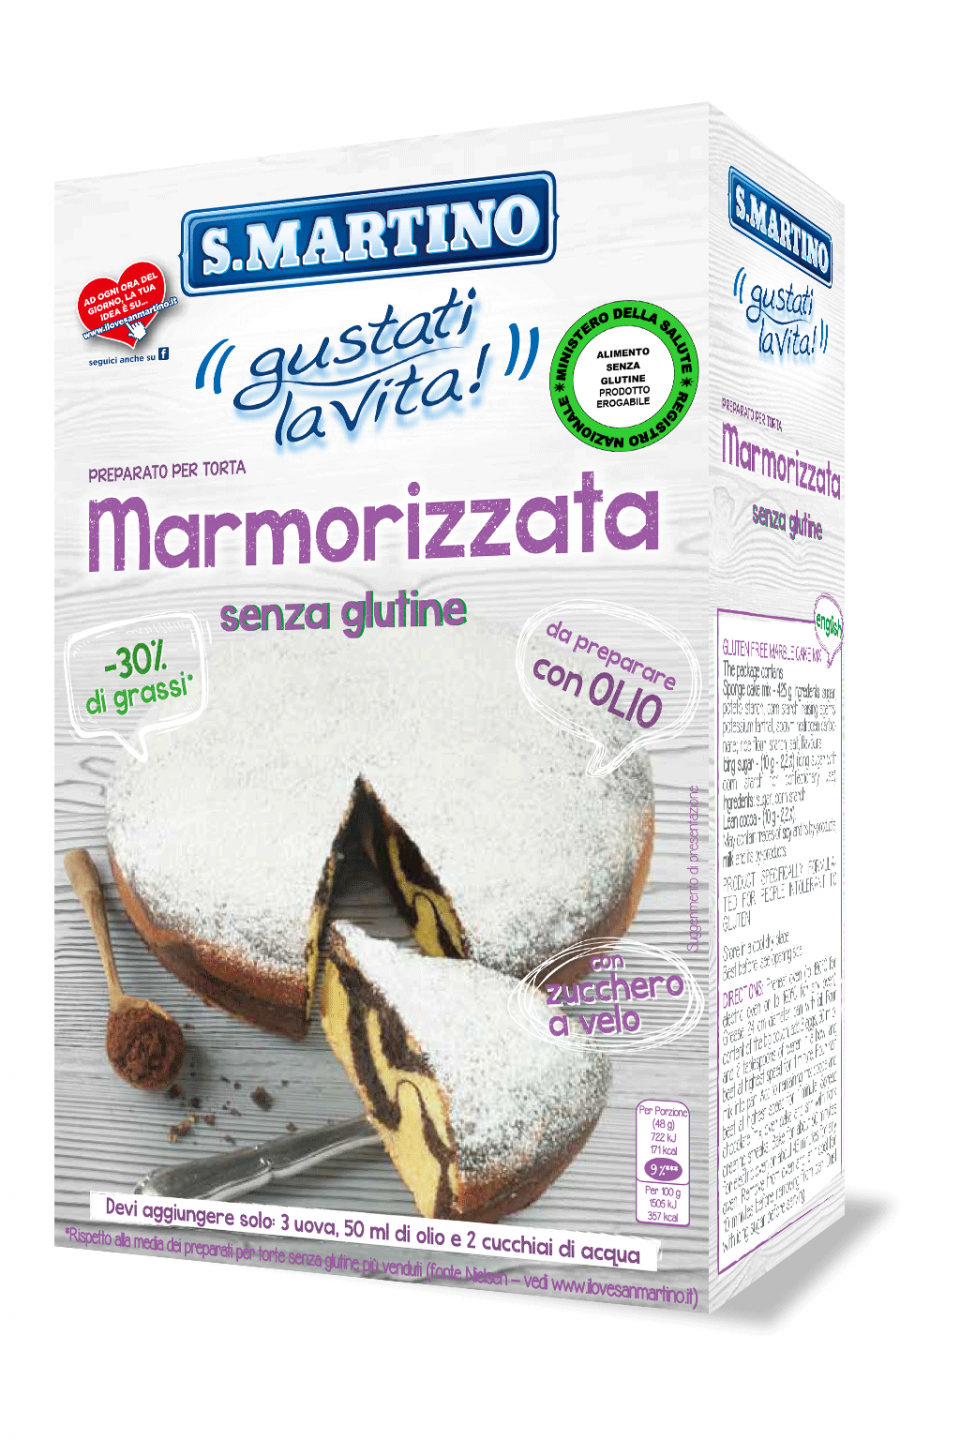 S.MARTINO Torta Marmorizzata senza glutine 445g